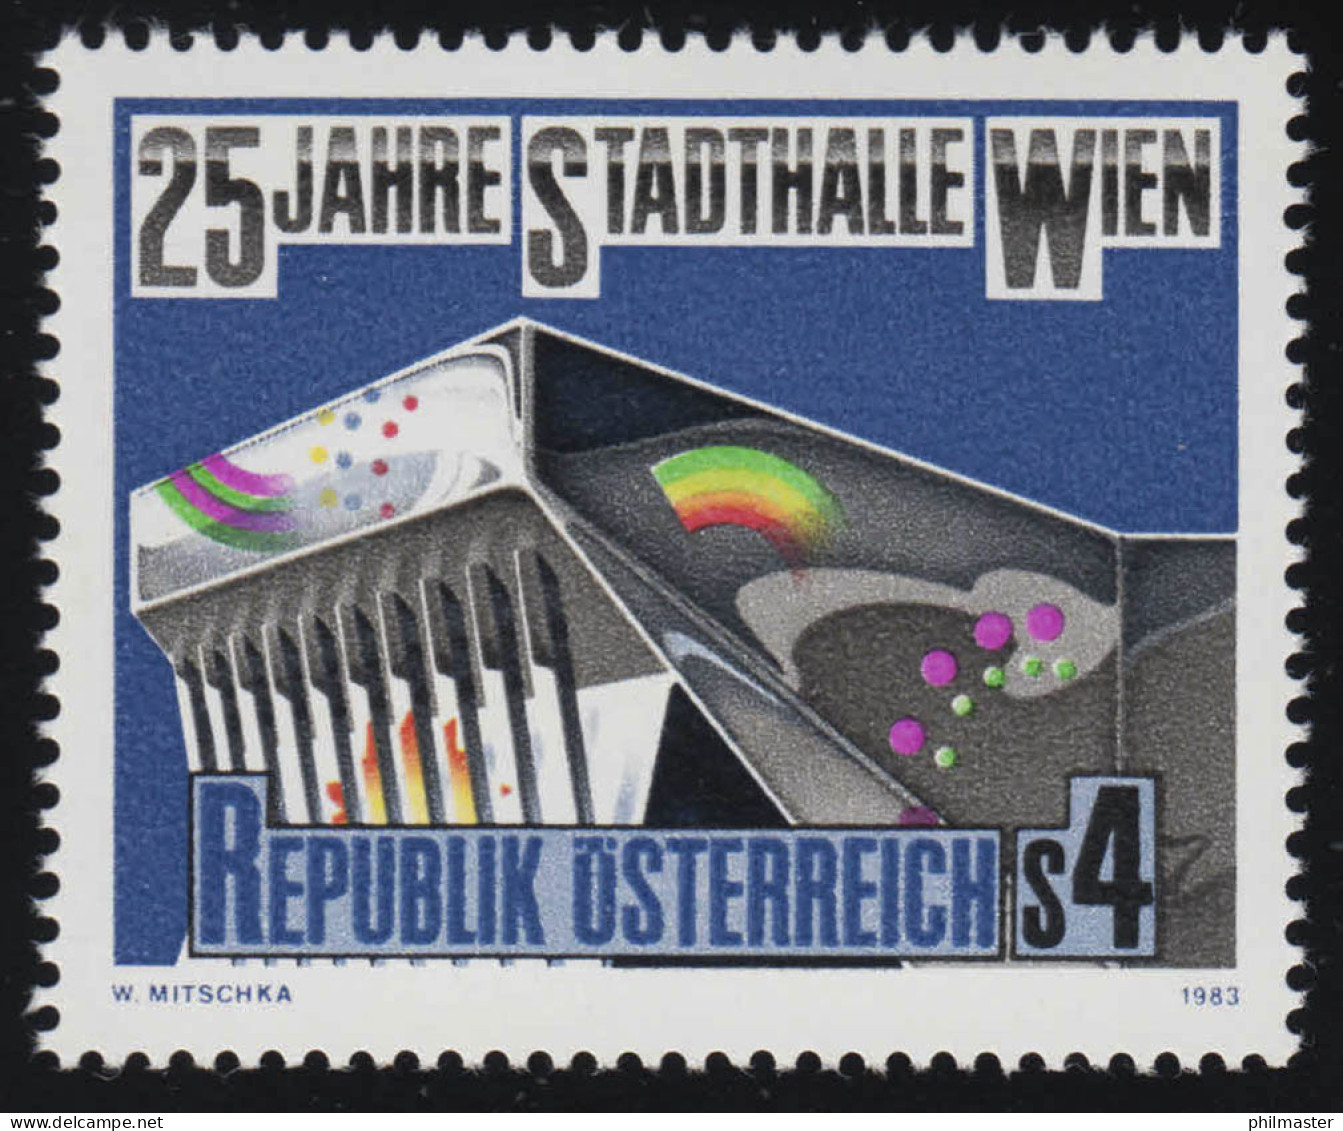 1742 25 Jahre Wiener Stadthalle, Teile Der Wiener Stadthalle, 4 S Postfrisch ** - Unused Stamps